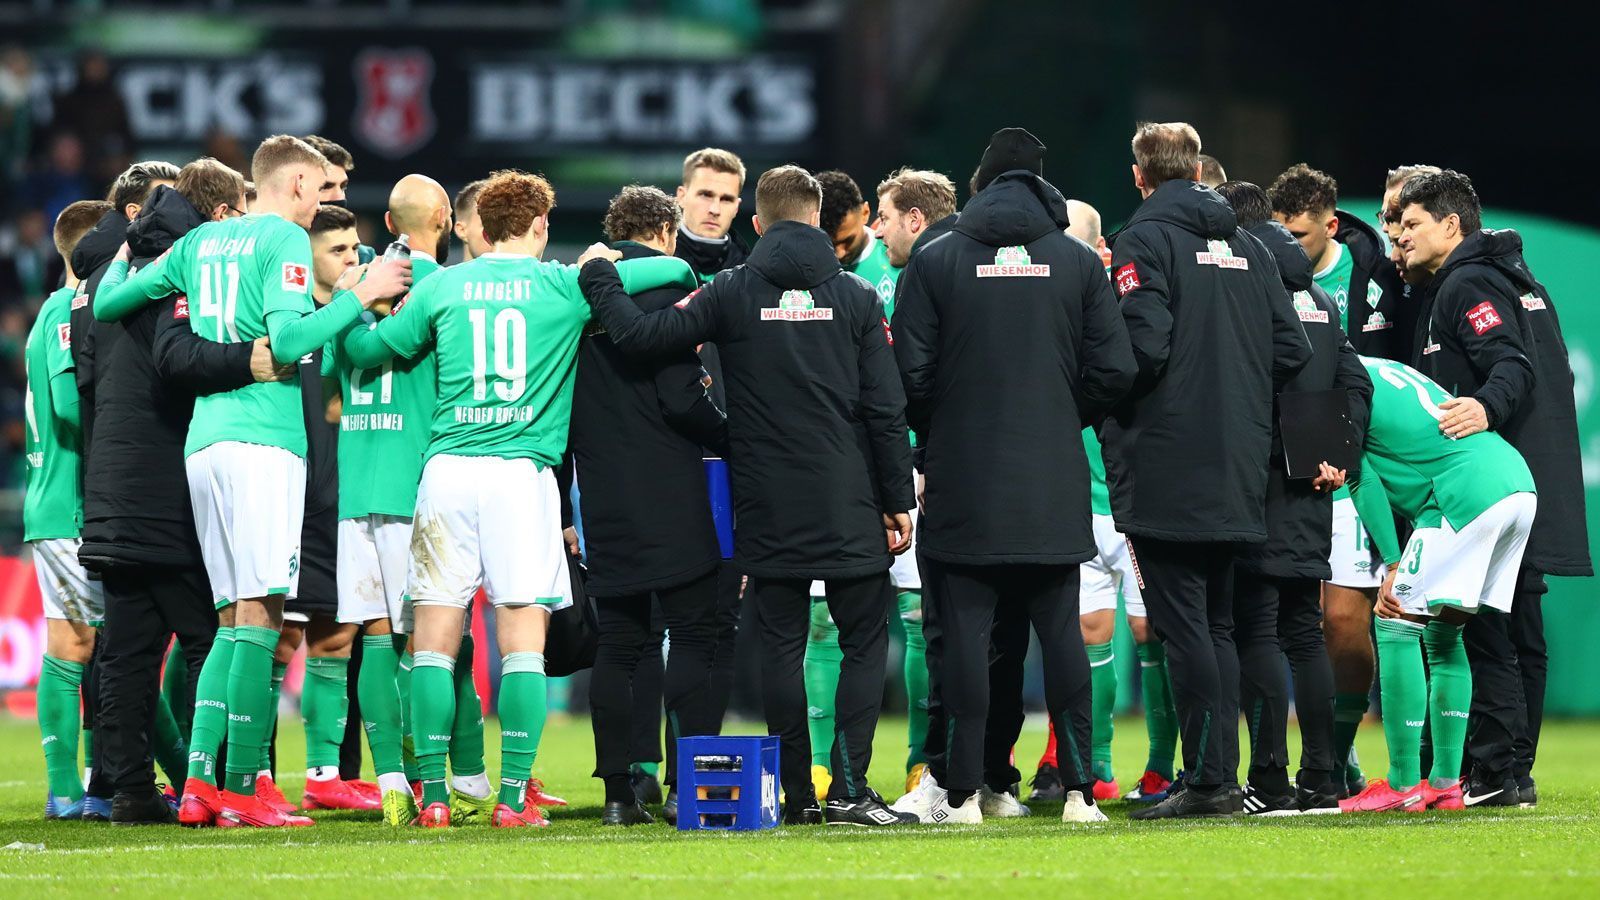 
                <strong>Fazit</strong><br>
                Die Saison des SV Werder Bremen ist bisher eine einzige Enttäuschung. Zu wenig Punkte, zu wenig Heimsiege. Ein Trainer und ein Sportchef, die die Mannschaft vor der Saison deutlich stärker einschätzten, als sie tatsächlich war. Dazu kamen Verletzungspech und Schlüsselspieler außer Form. Eigentlich ist das die typische Bilanz eines Absteigers. Sollten die Bremer erstmals nach 40 Jahren den Weg in die Zweitklassigkeit antreten müssen, wäre dies nach dieser Spielzeit ganz sicher nicht unverdient. Noch gibt es aber die Möglichkeit, in Heidenheim mit einer Partie alles wieder gerade zu biegen. Und die Gruselsaison 2019/20 in einem einzigen Spiel vergessen zu machen.
              